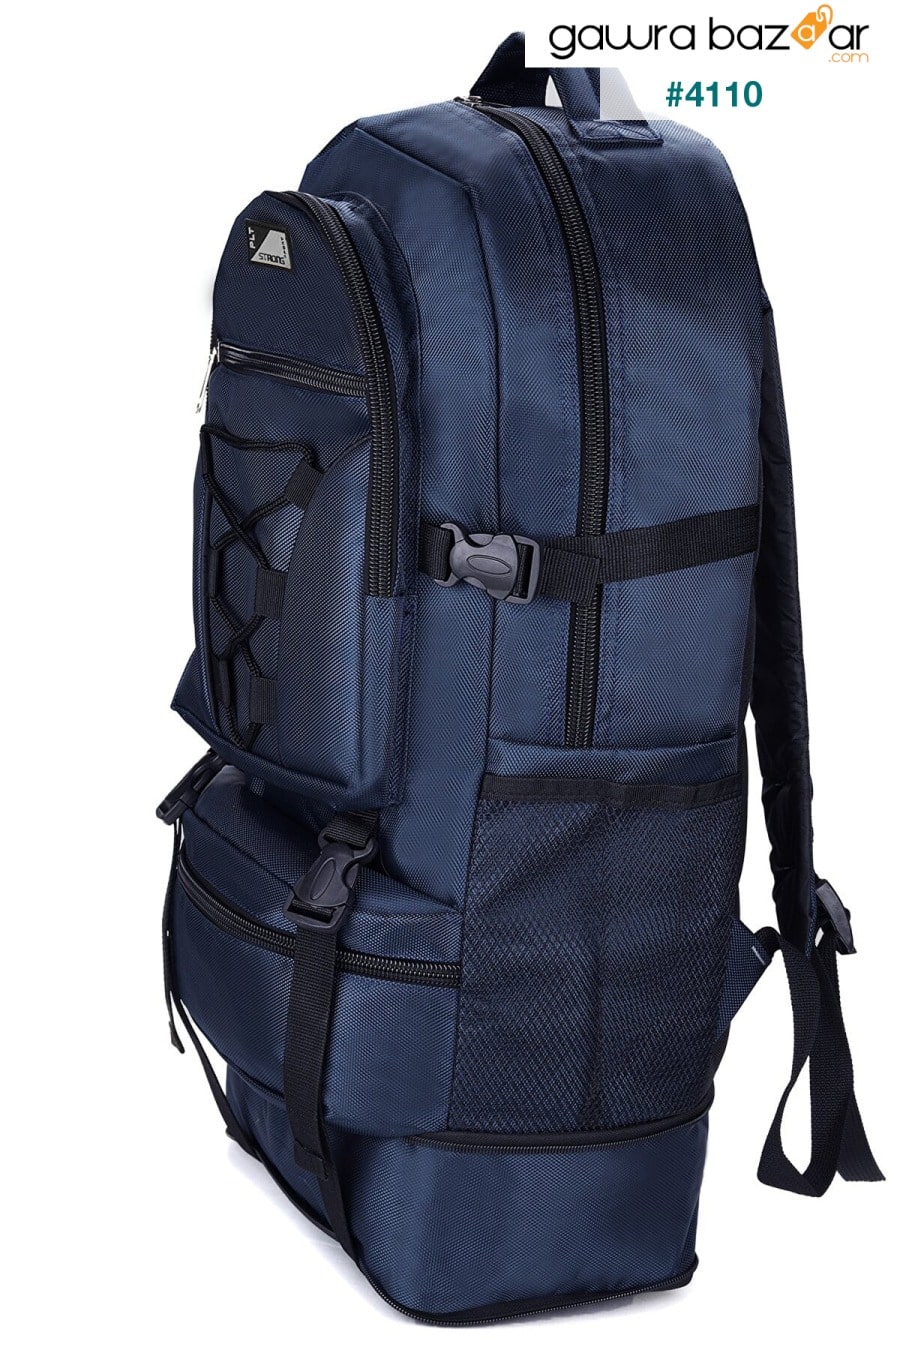 حقيبة ماونتينير St-02 مضادة للماء متعددة العيون للسفر والجبل أزرق كحلي Fiyaka 5